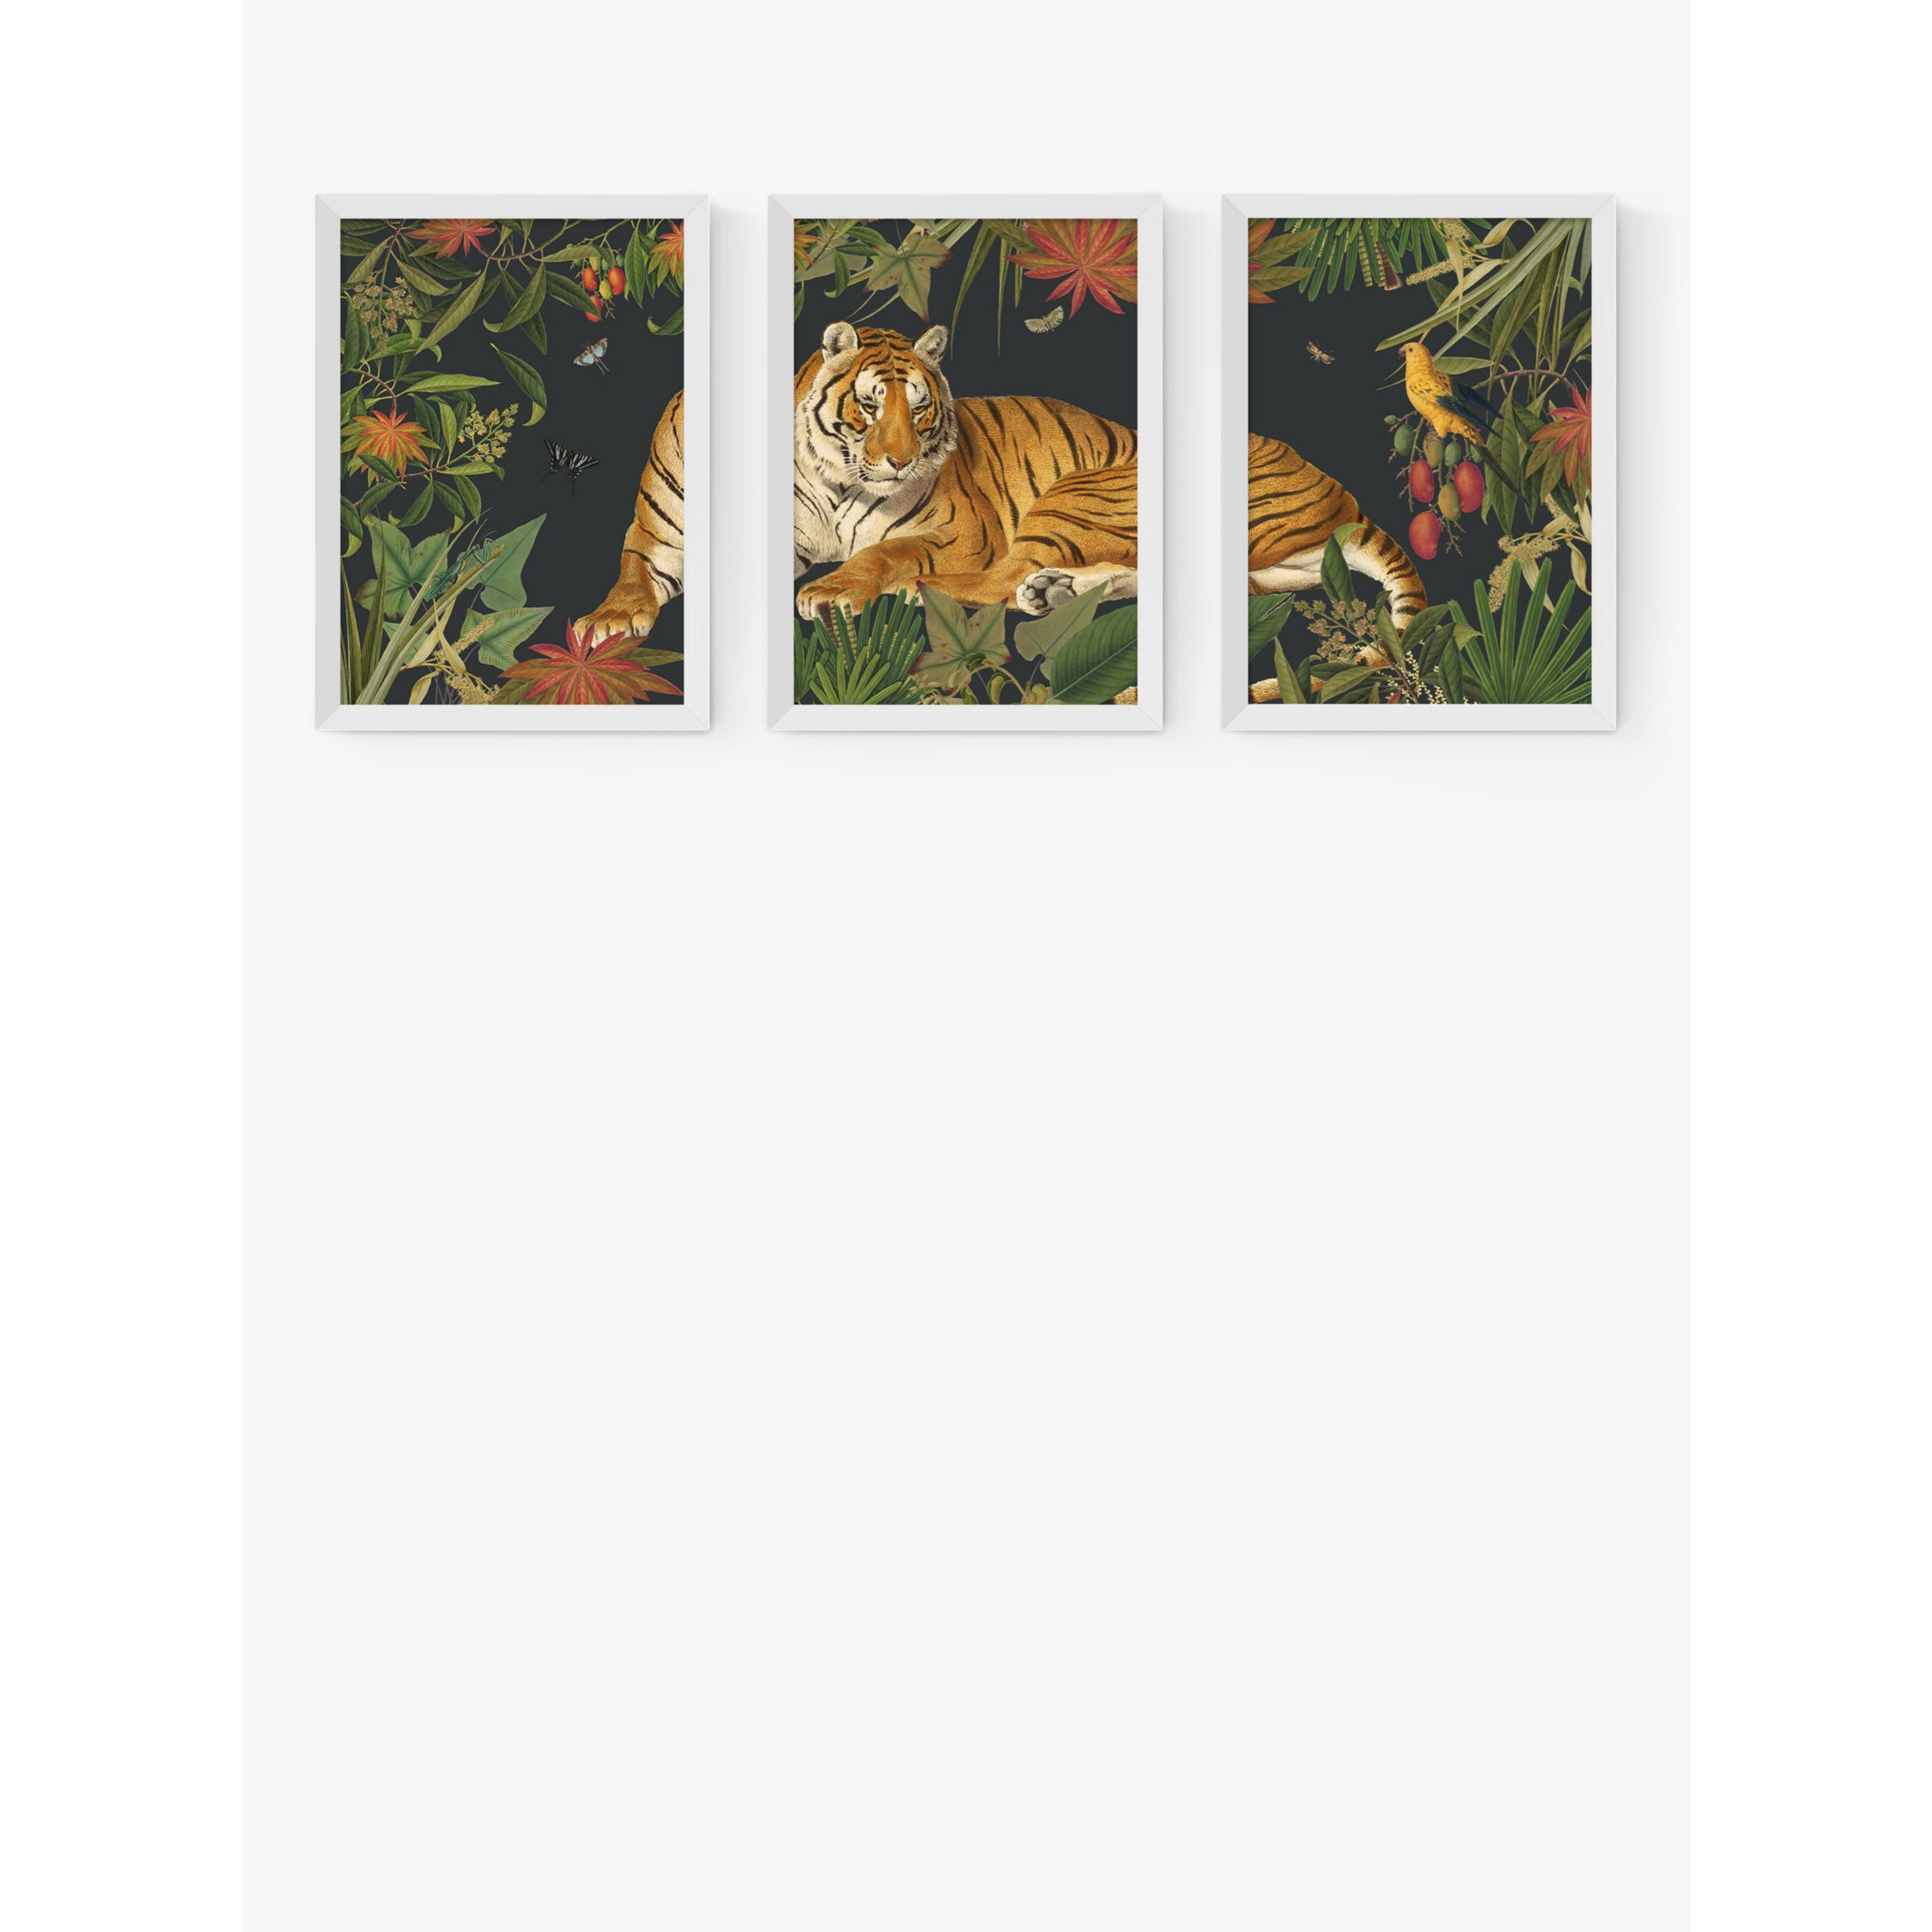 EAST END PRINTS Natural History Museum 'Tiger' Framed Print, Set of 3 - image 1